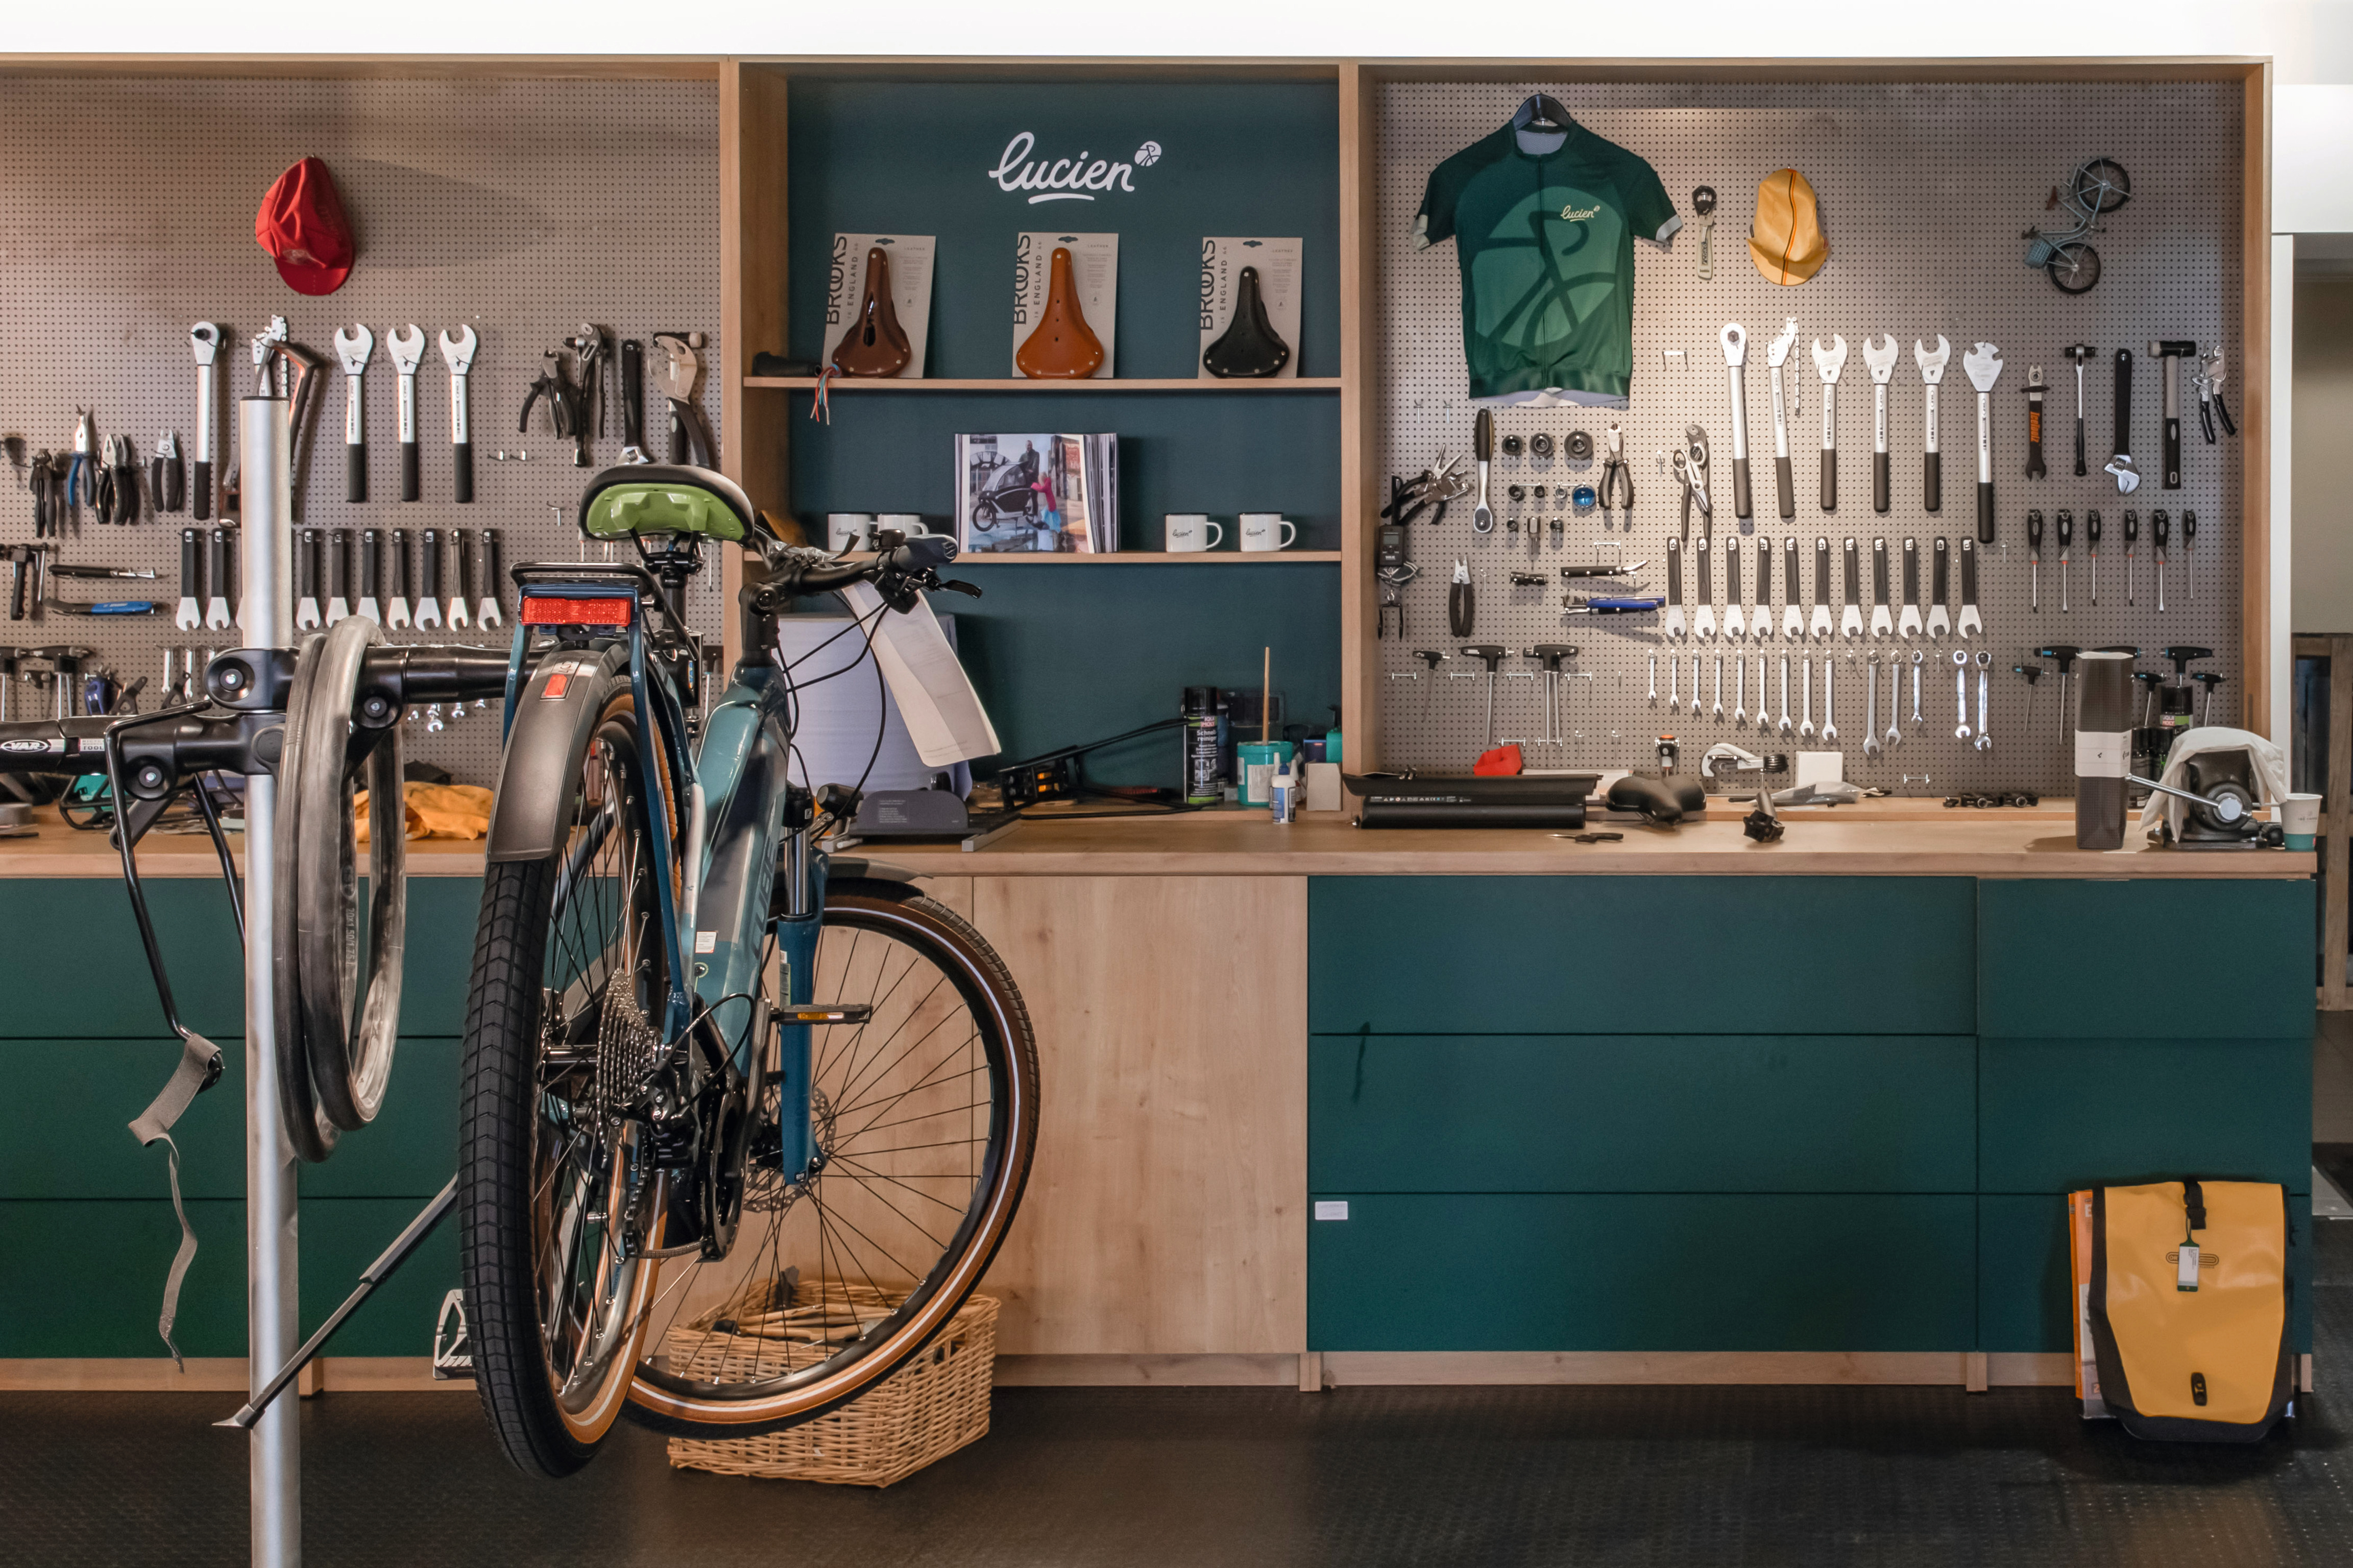 I clienti possono far riparare le proprie biciclette nel workshop.